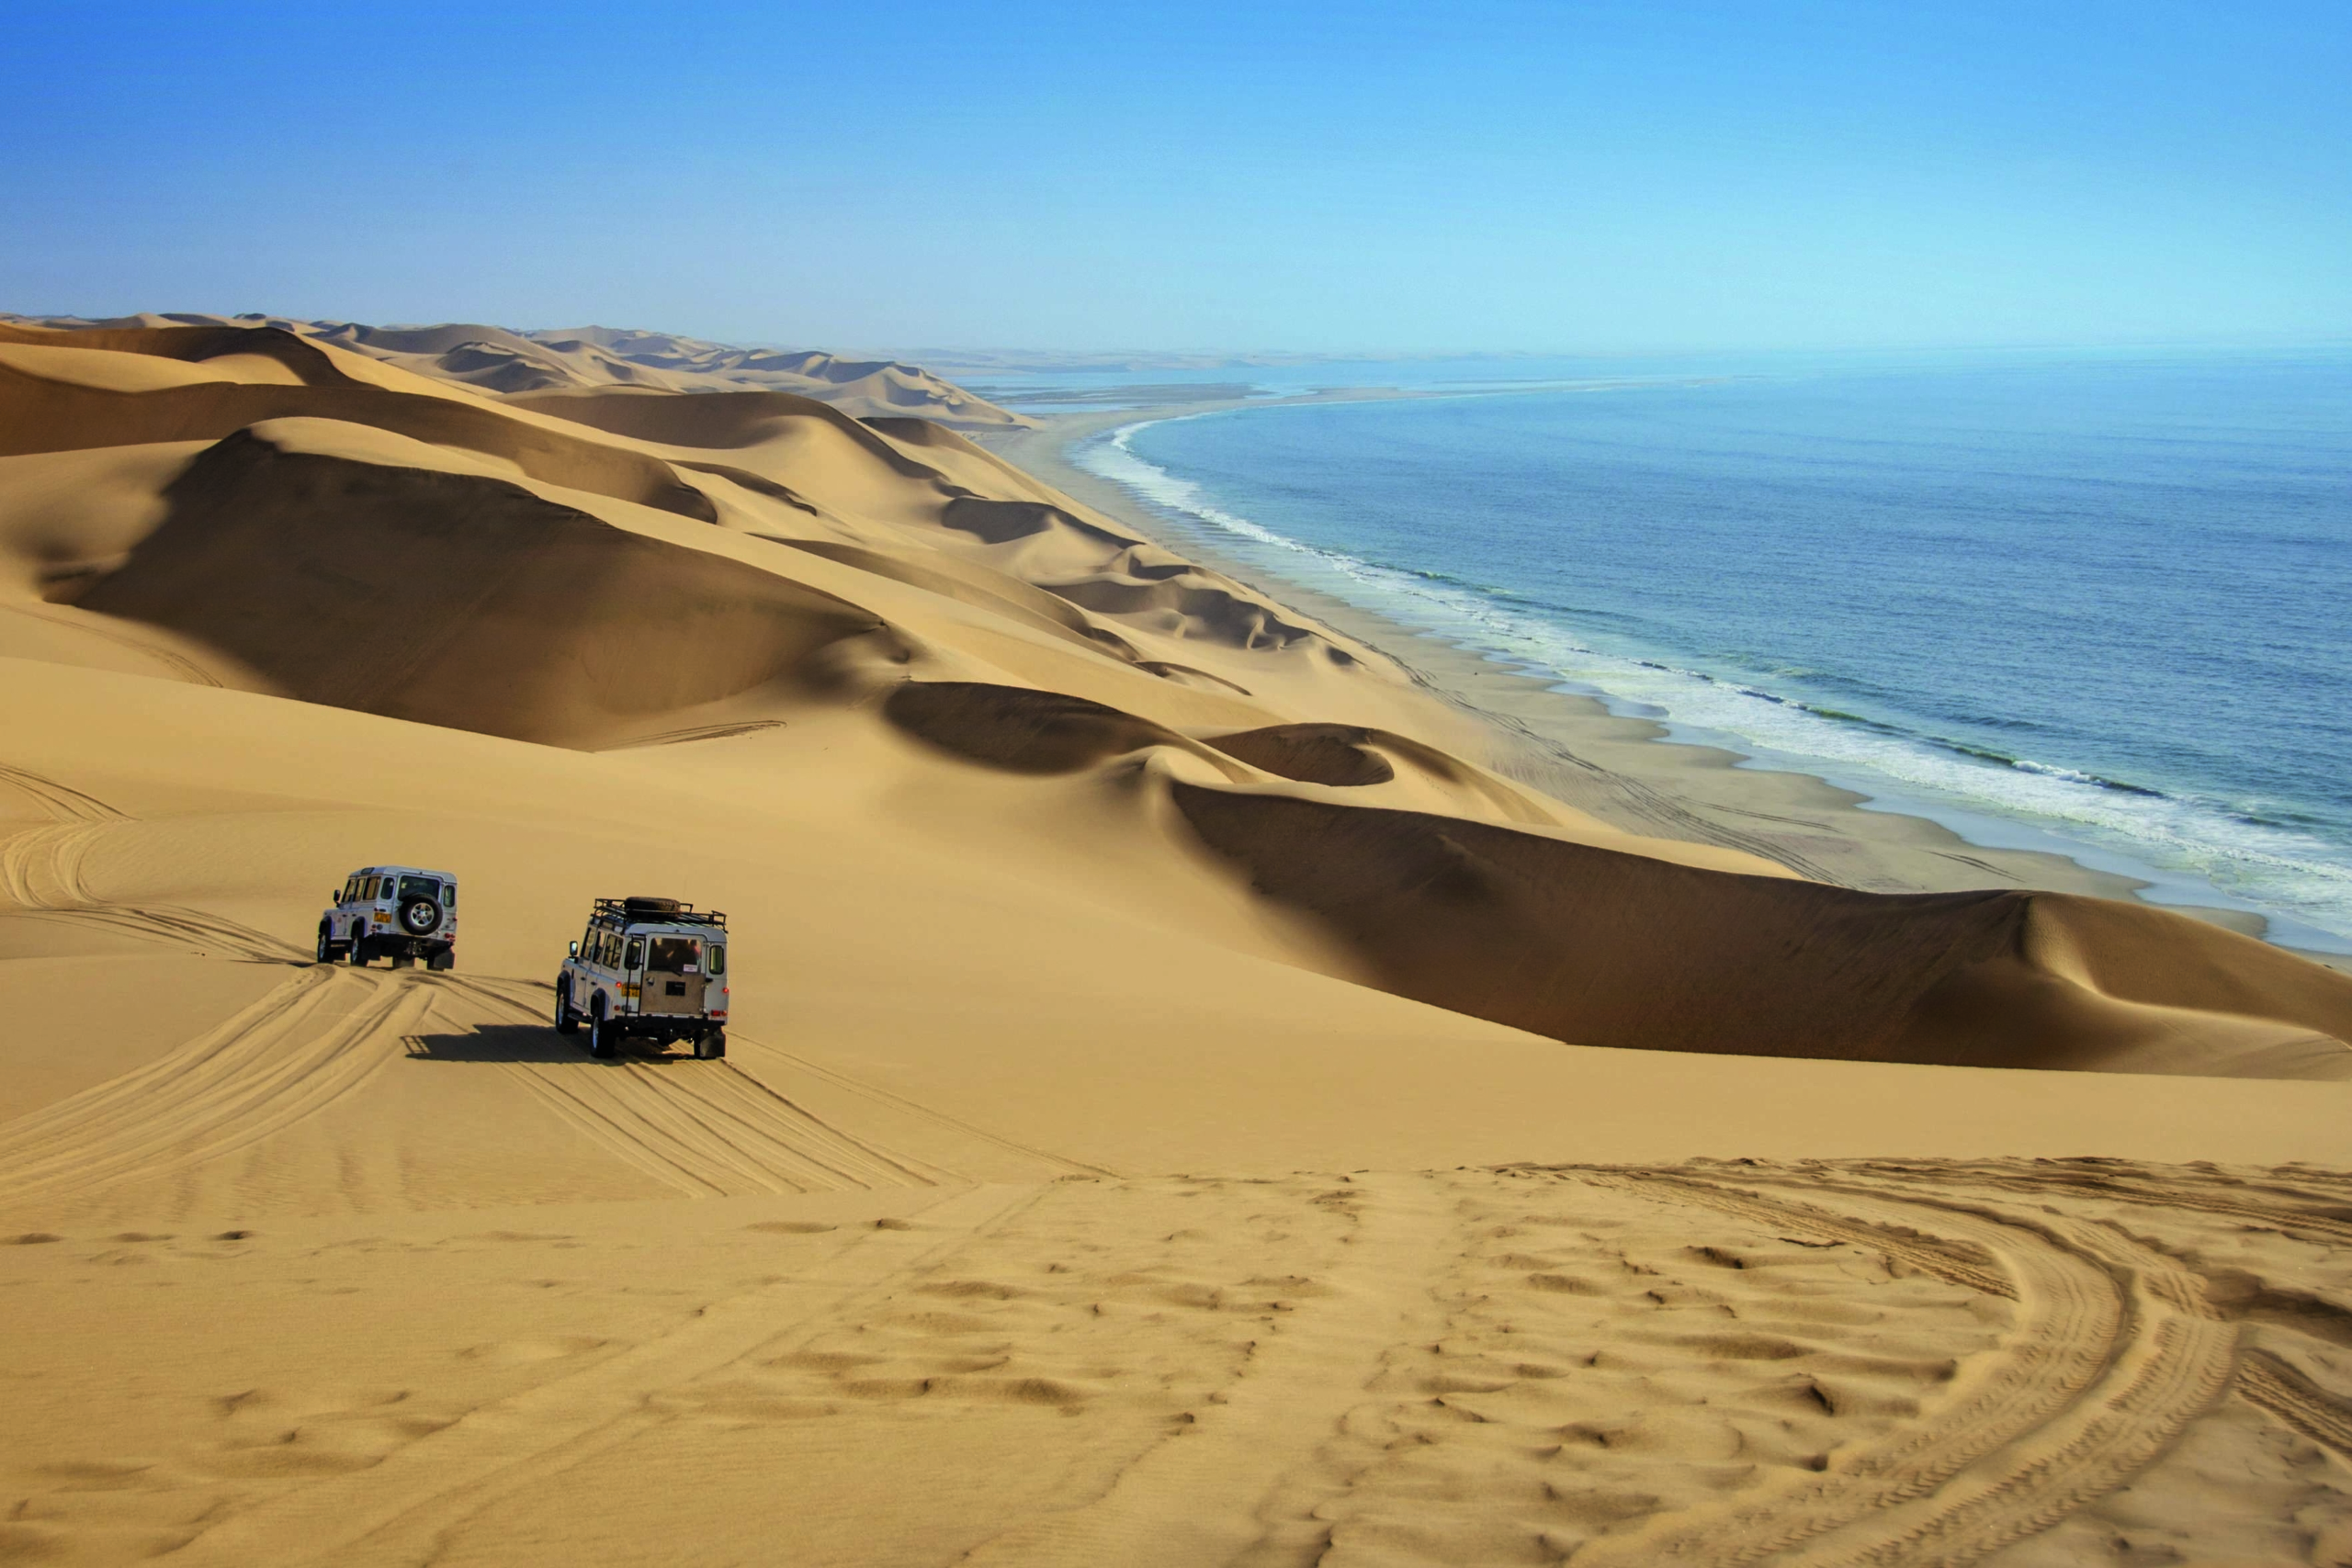 WOW Momente mit Hapag Lloyd Cruises in Sicht - Die Magie der Wüste und ein Meer der Entspannung